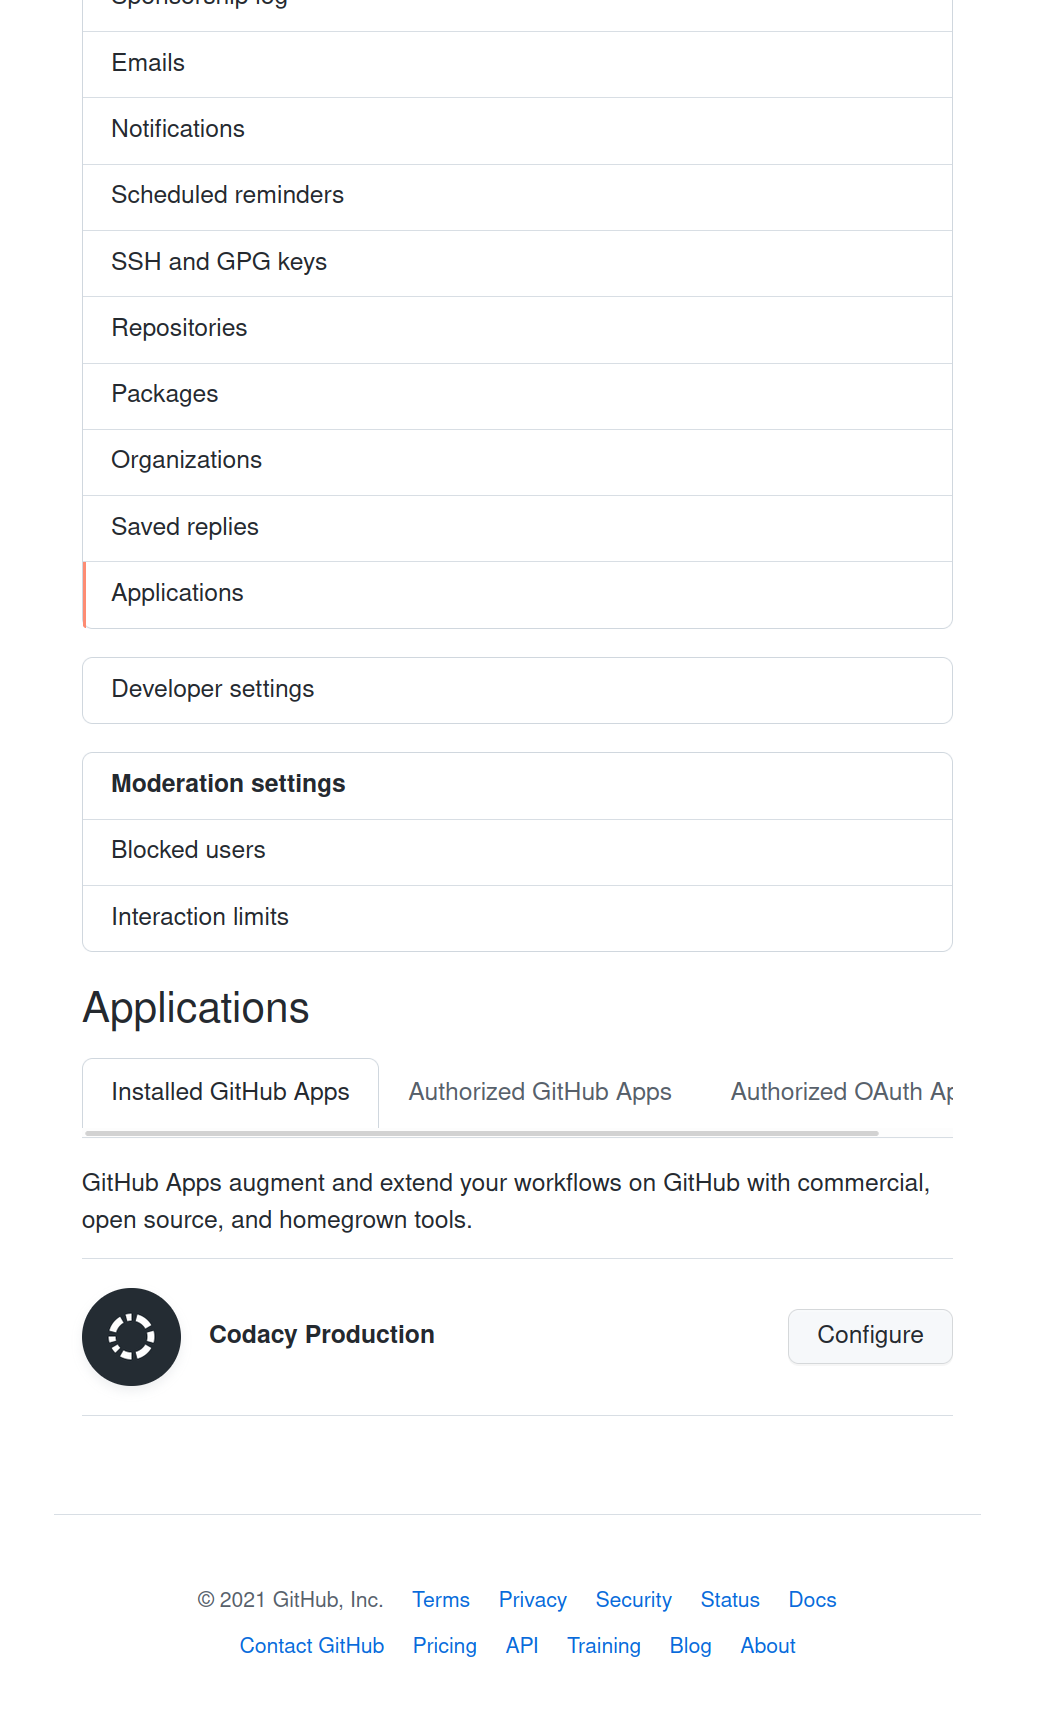 GitHub Codacy Configure page